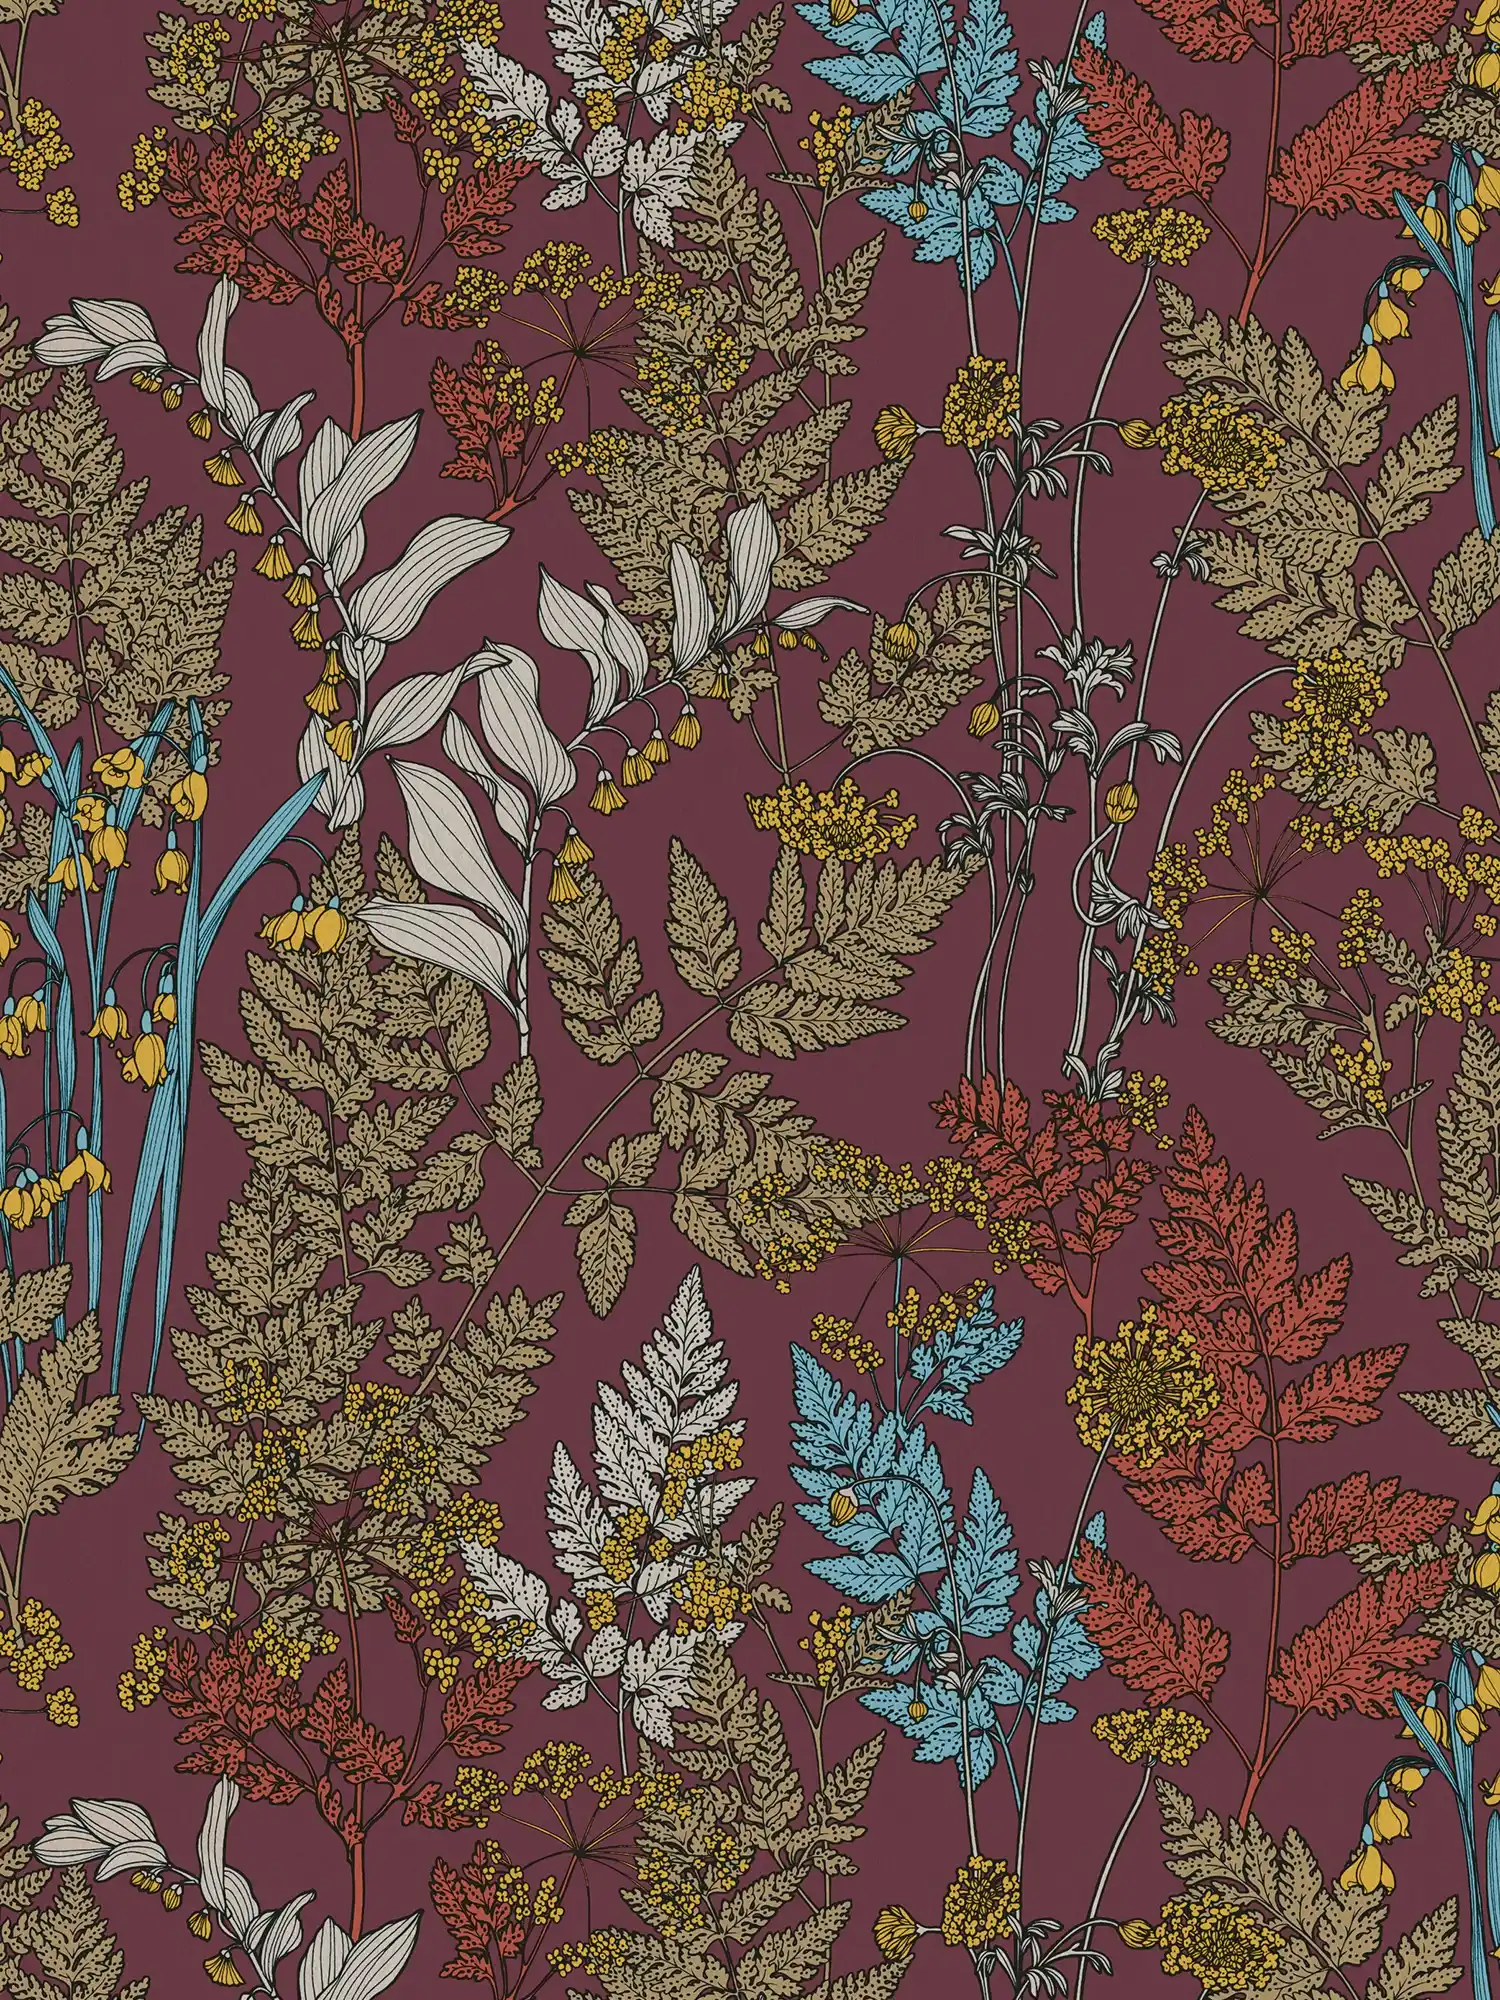         Lila Tapete mit buntem Blätter & Blumen Design – Rot, Gelb, Blau
    